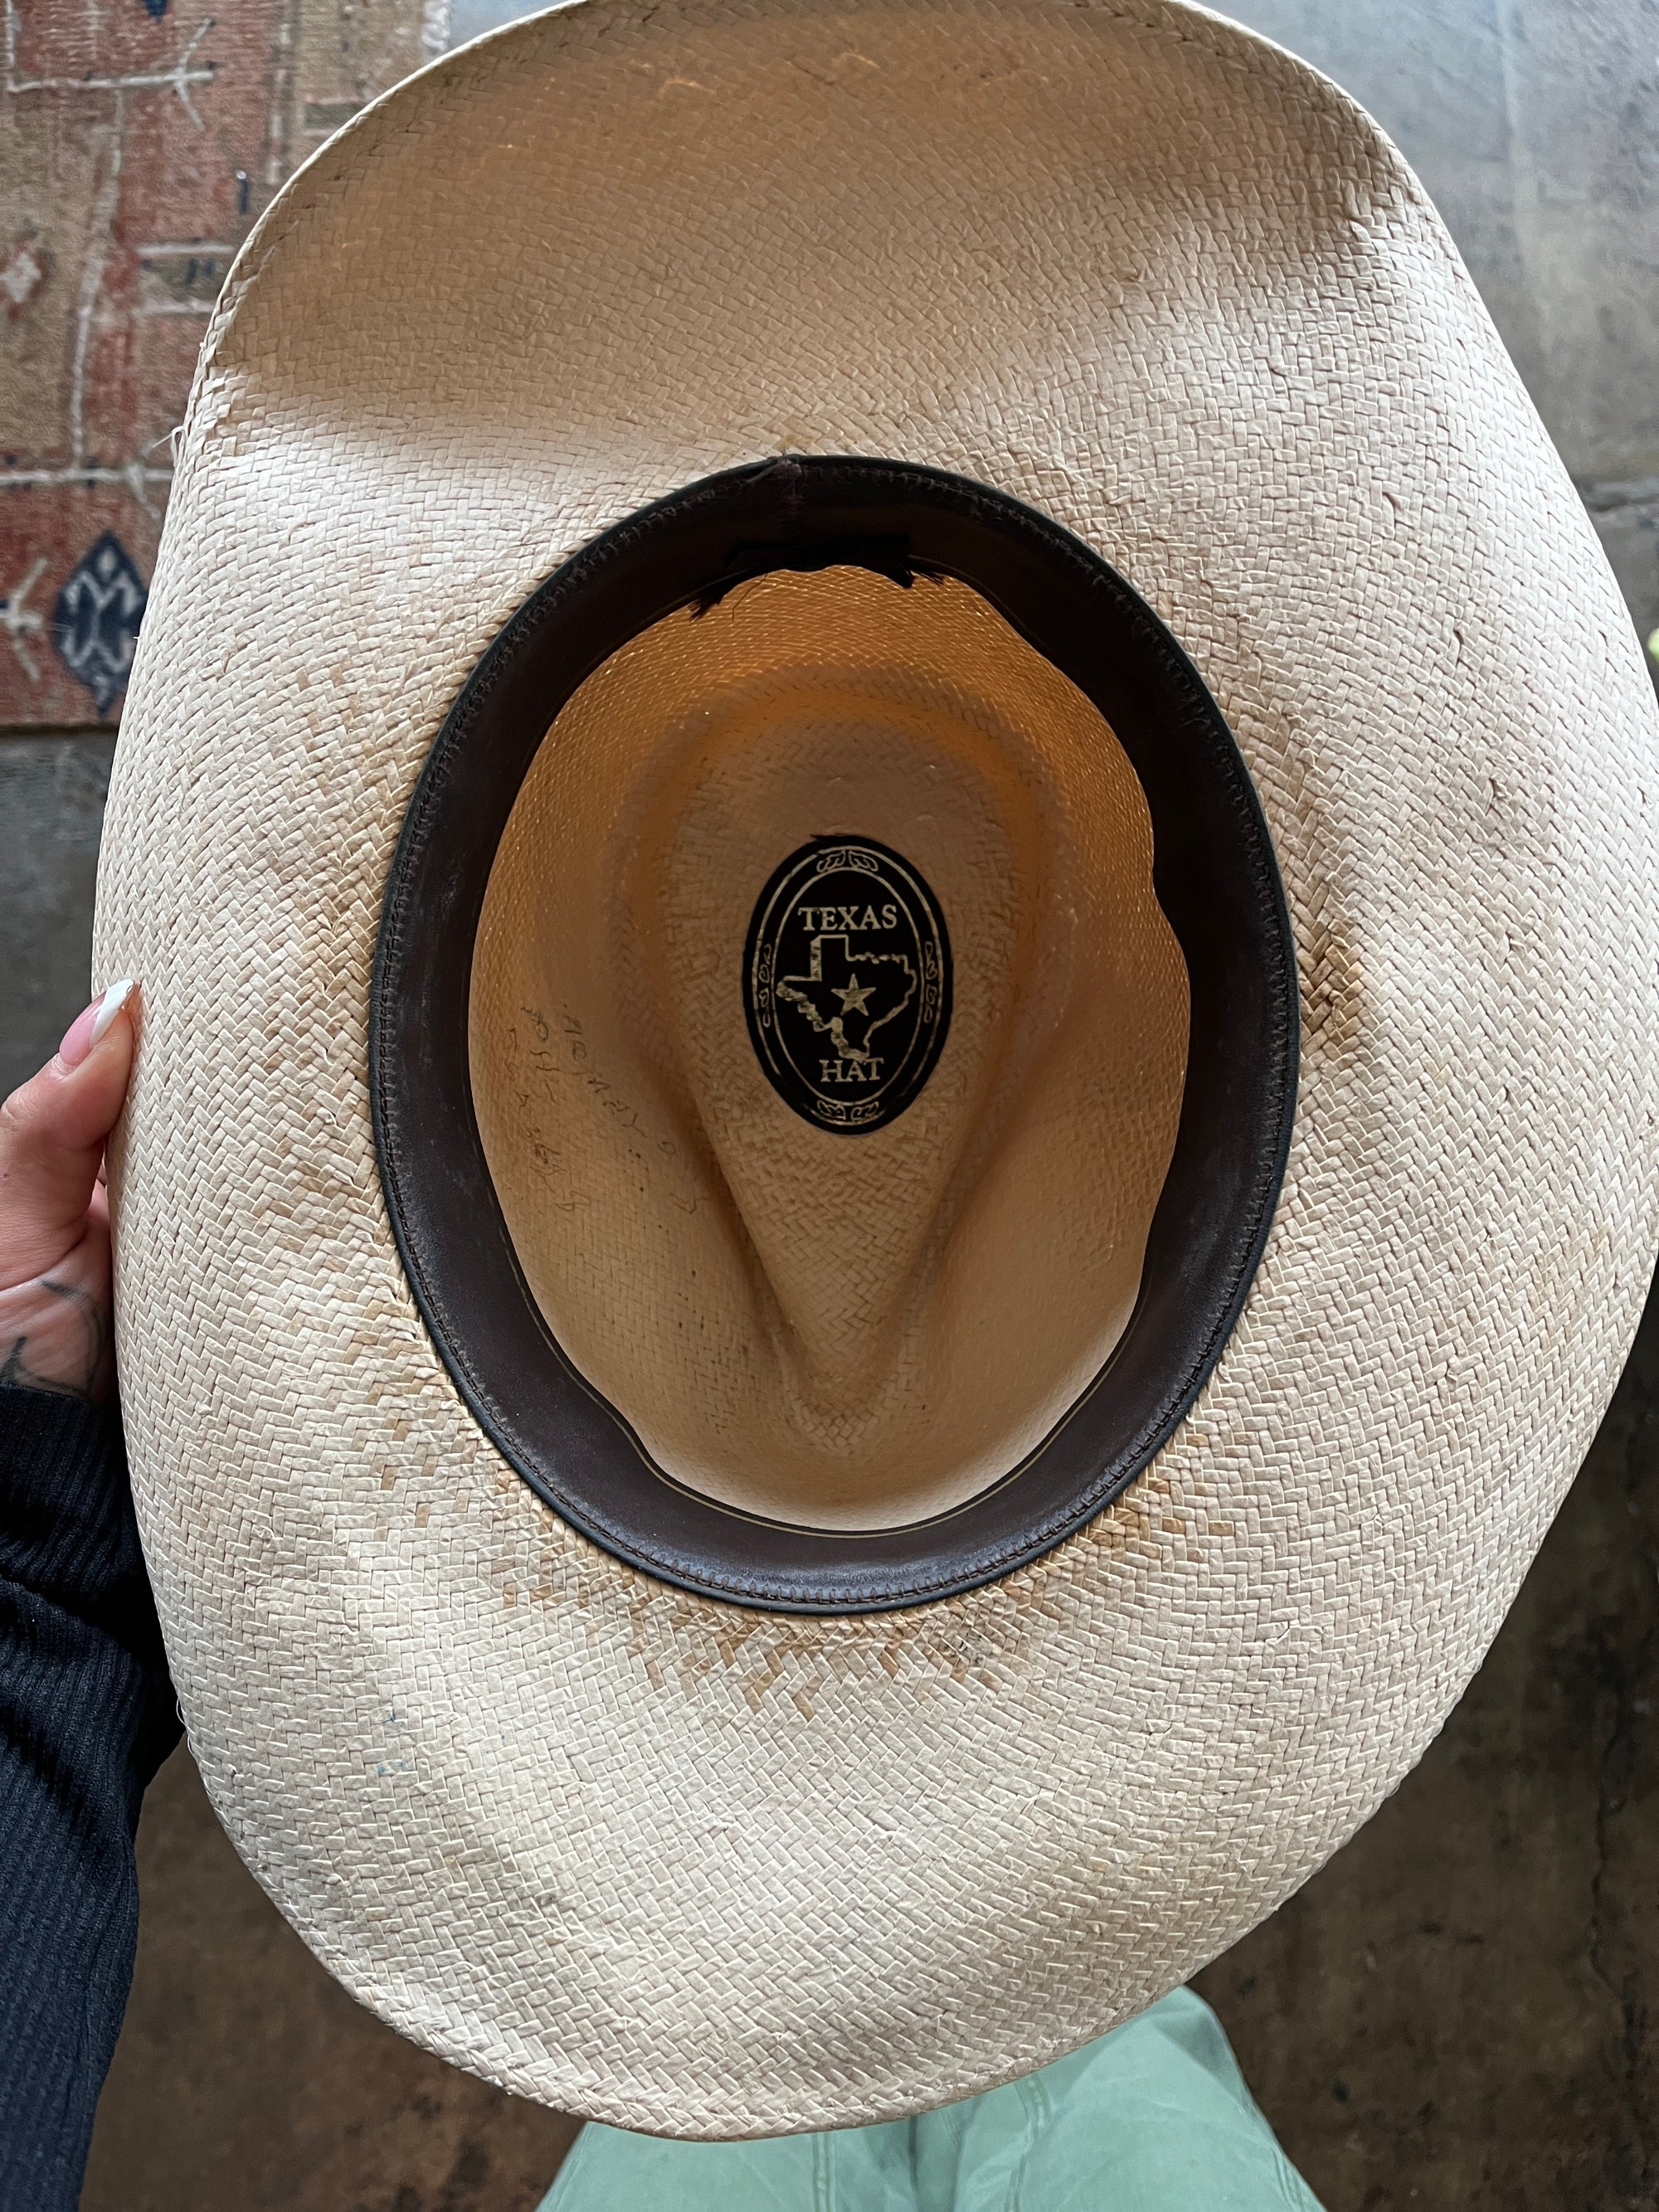 Texas Straw Cowboy Hat